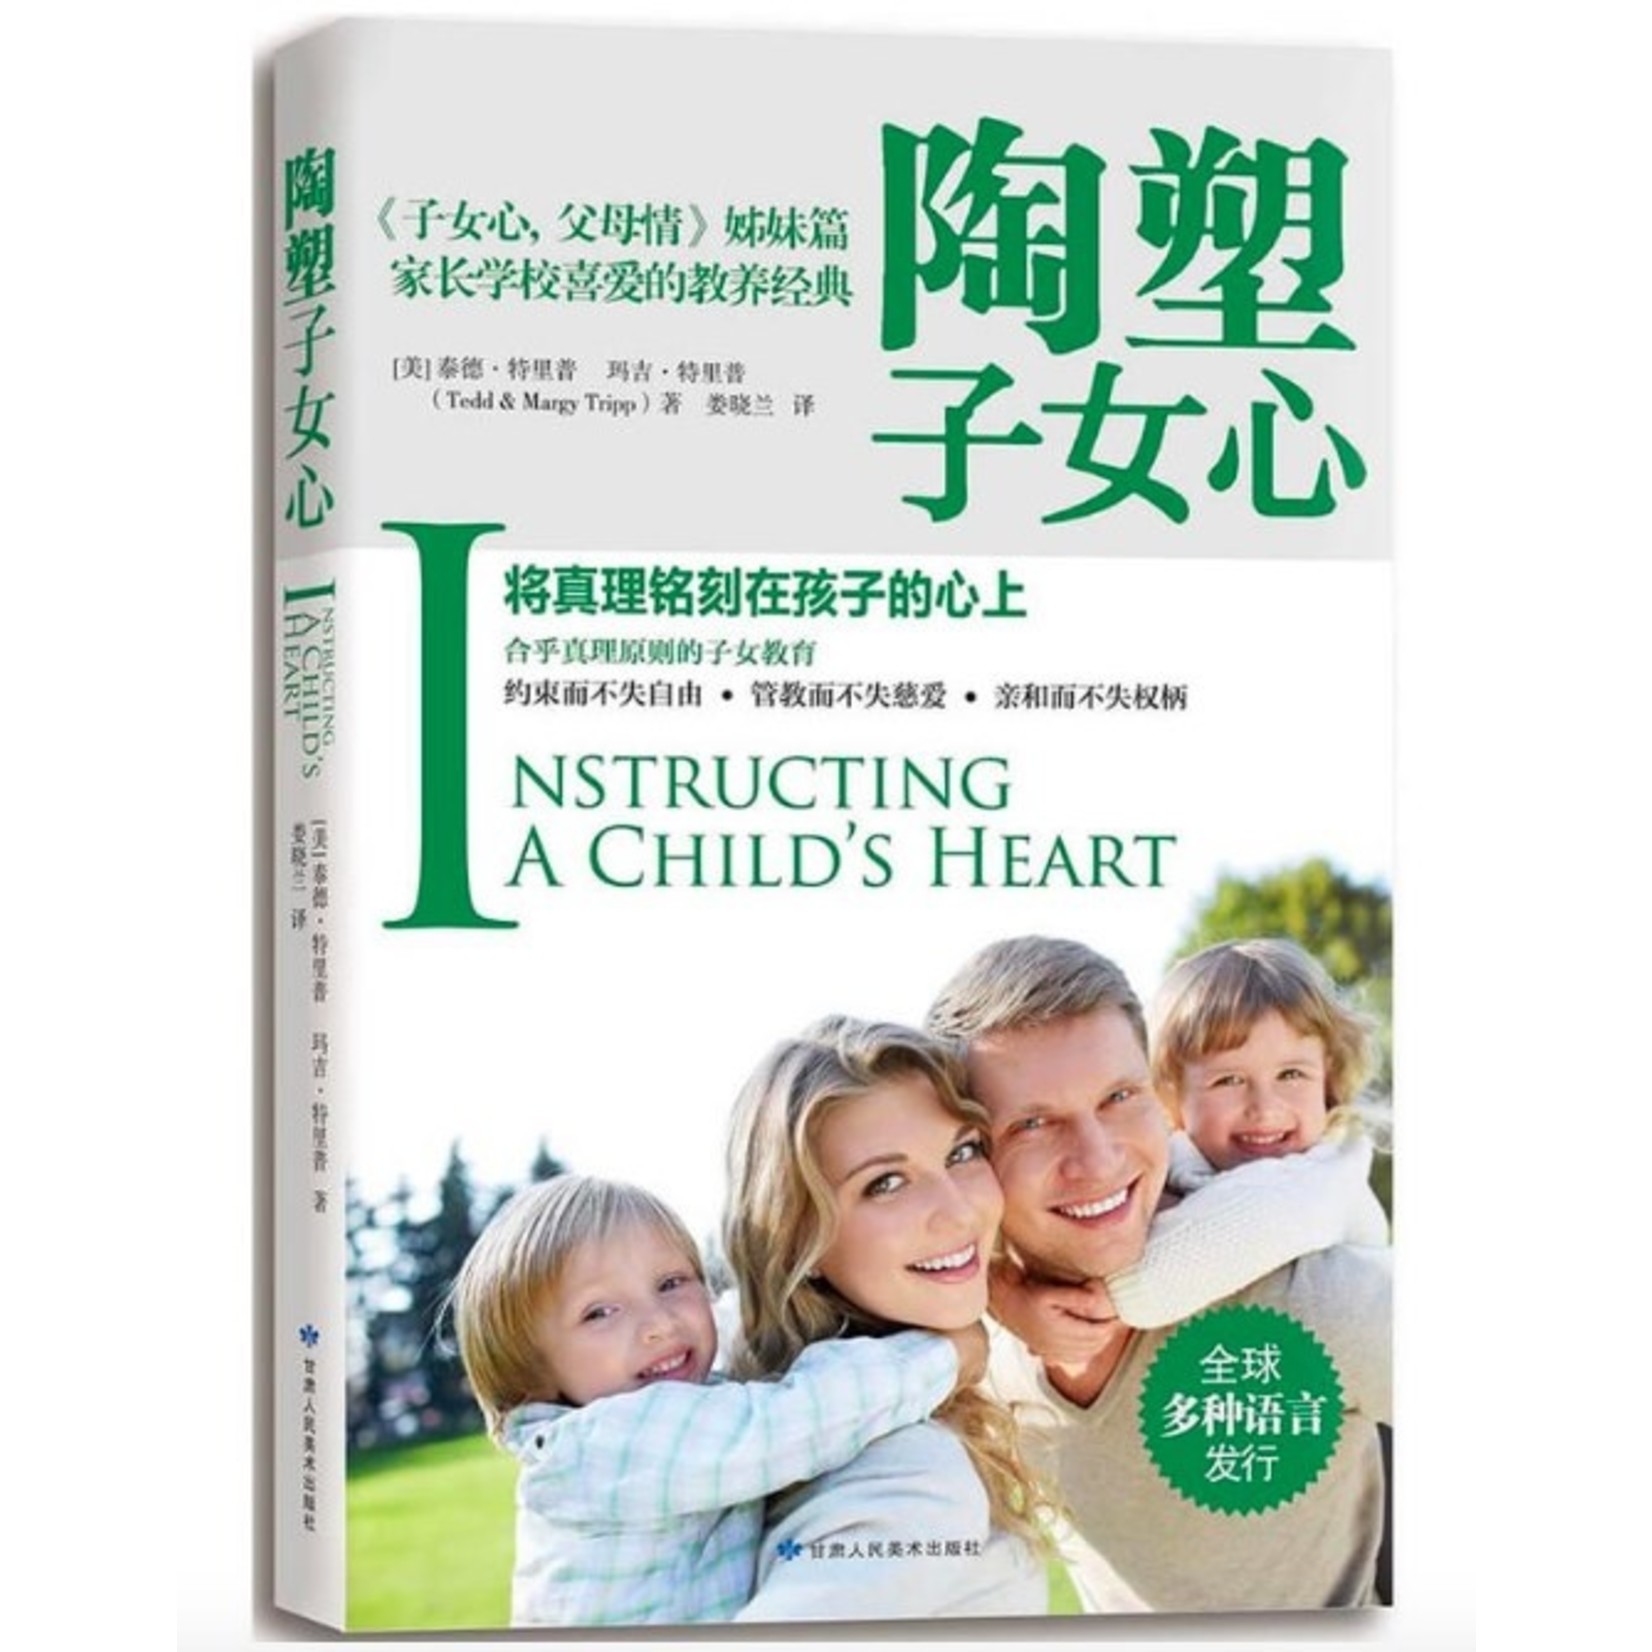 甘肅人民美術出版社 (CN) 陶塑子女心：将真理铭刻在孩子的心上 Instructing a Child’s Heart